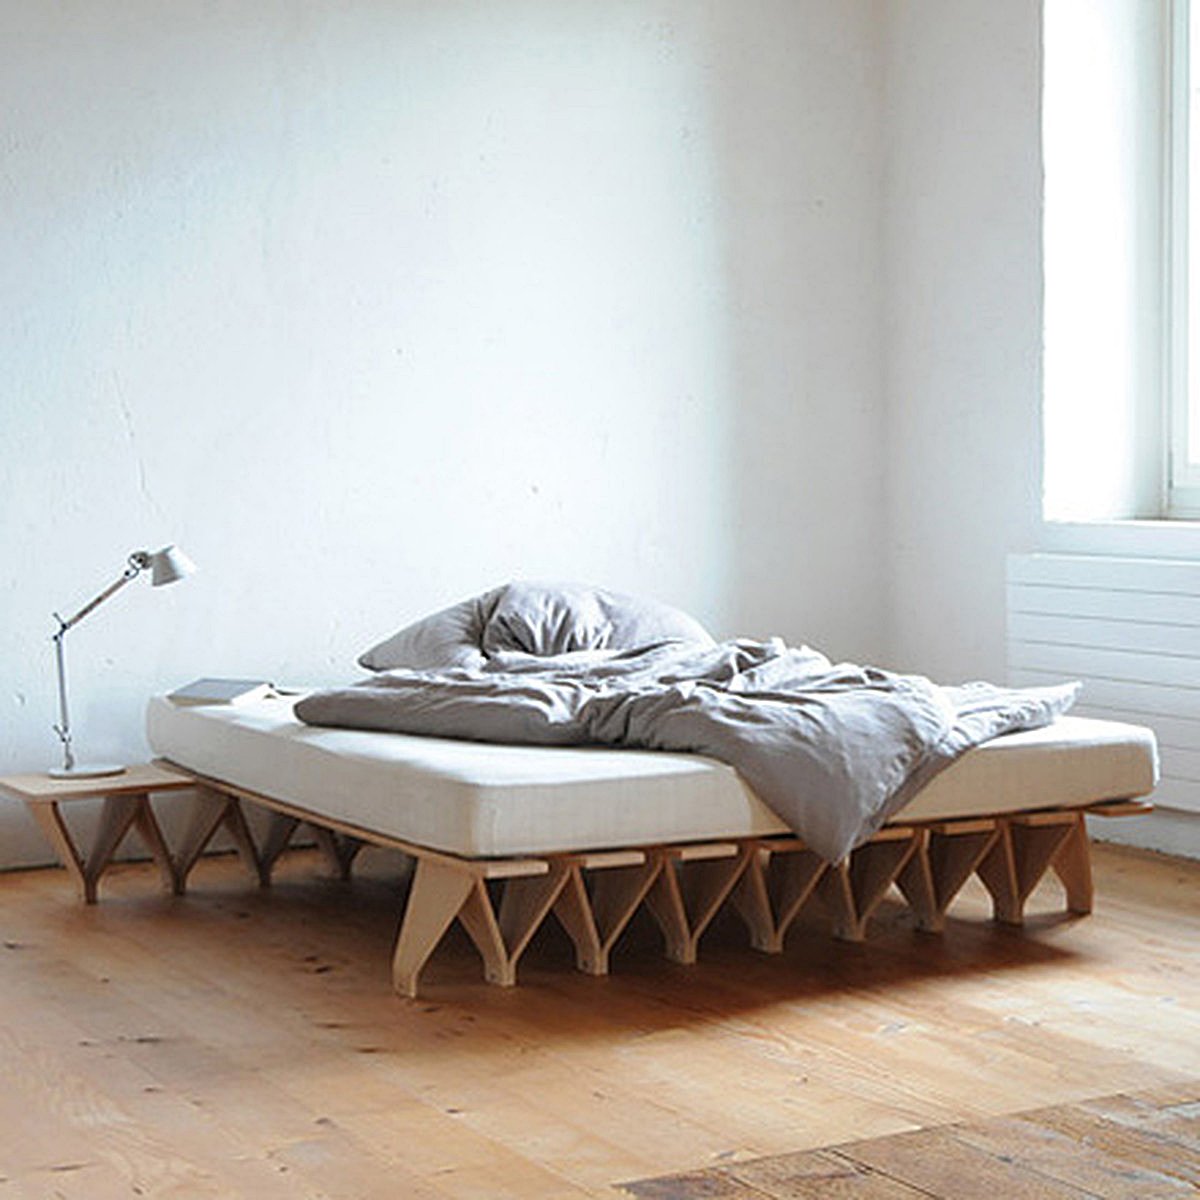 Кровать из картона